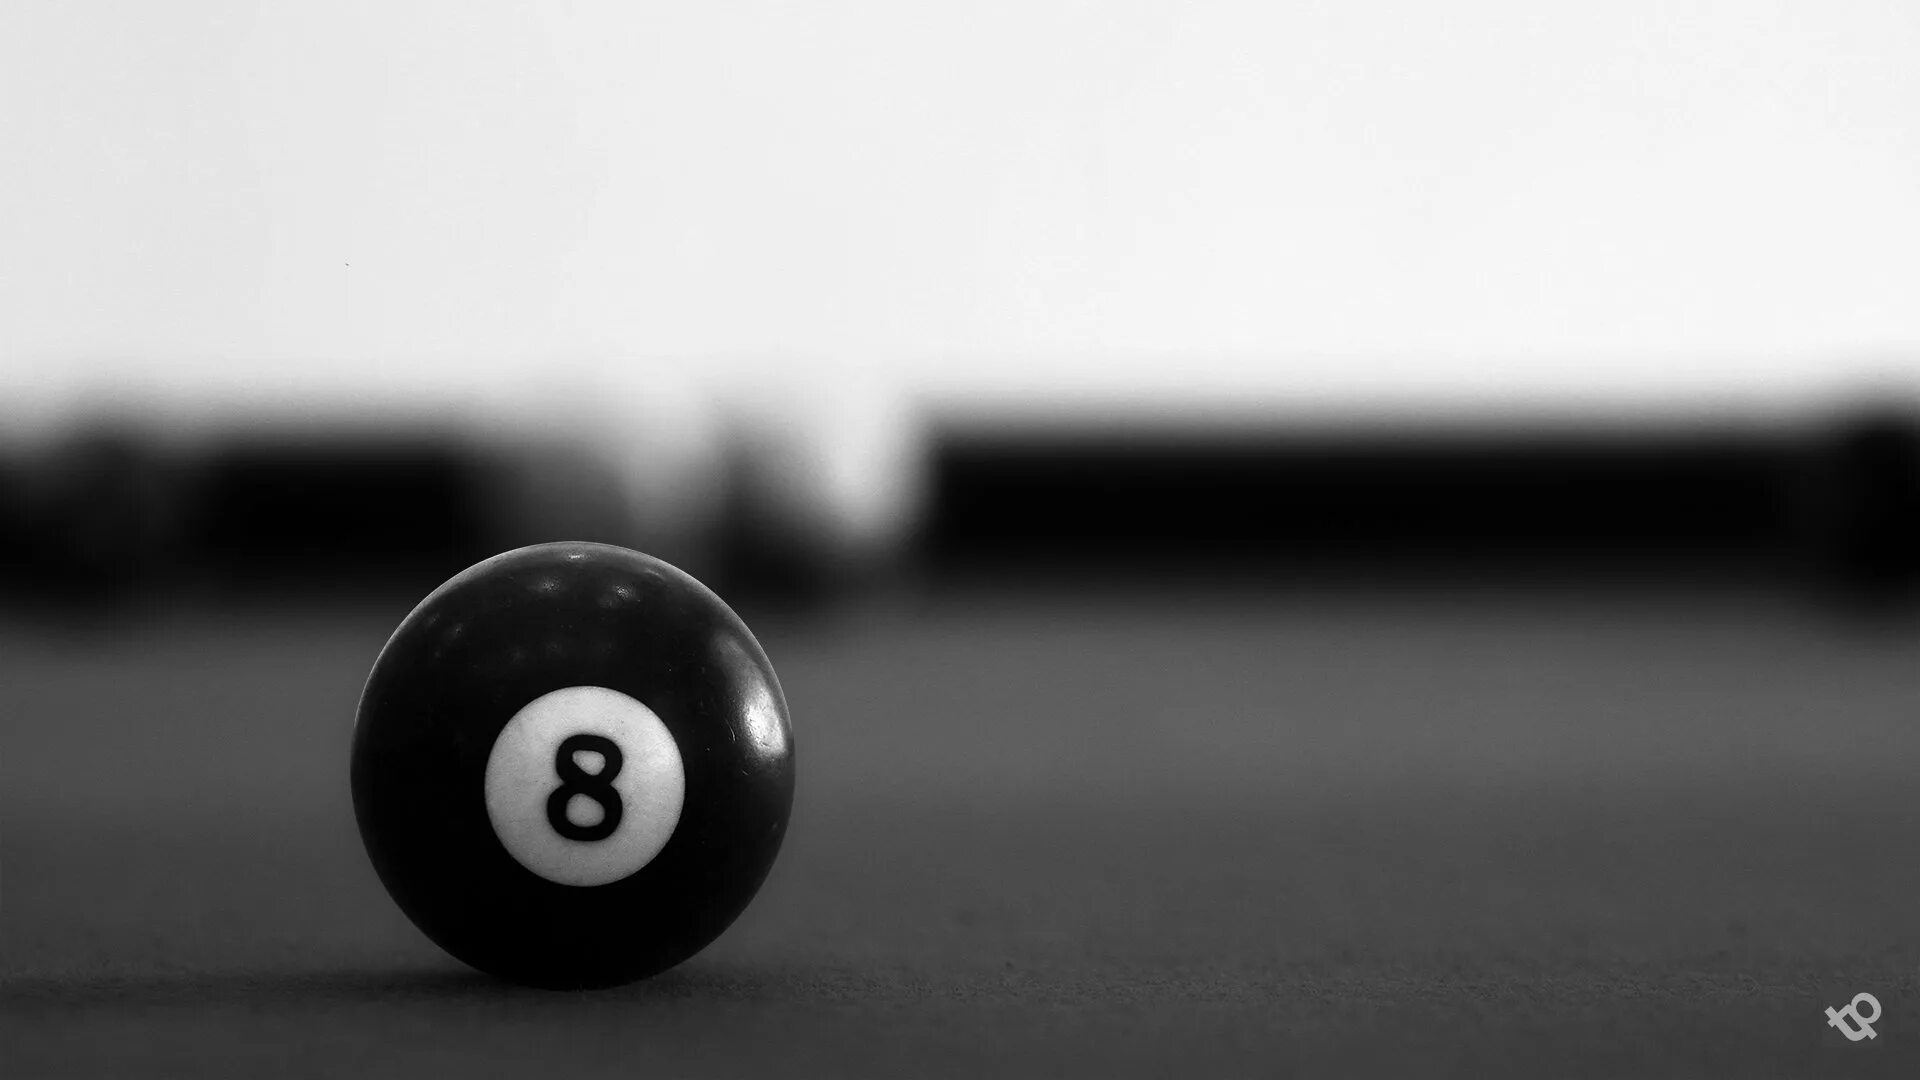 8 на черном шаре. Бильярд "8 Ball Pool". Черный бильярдный шар. Бильярдный шар с цифрой 8. Бильярд на черном фоне.